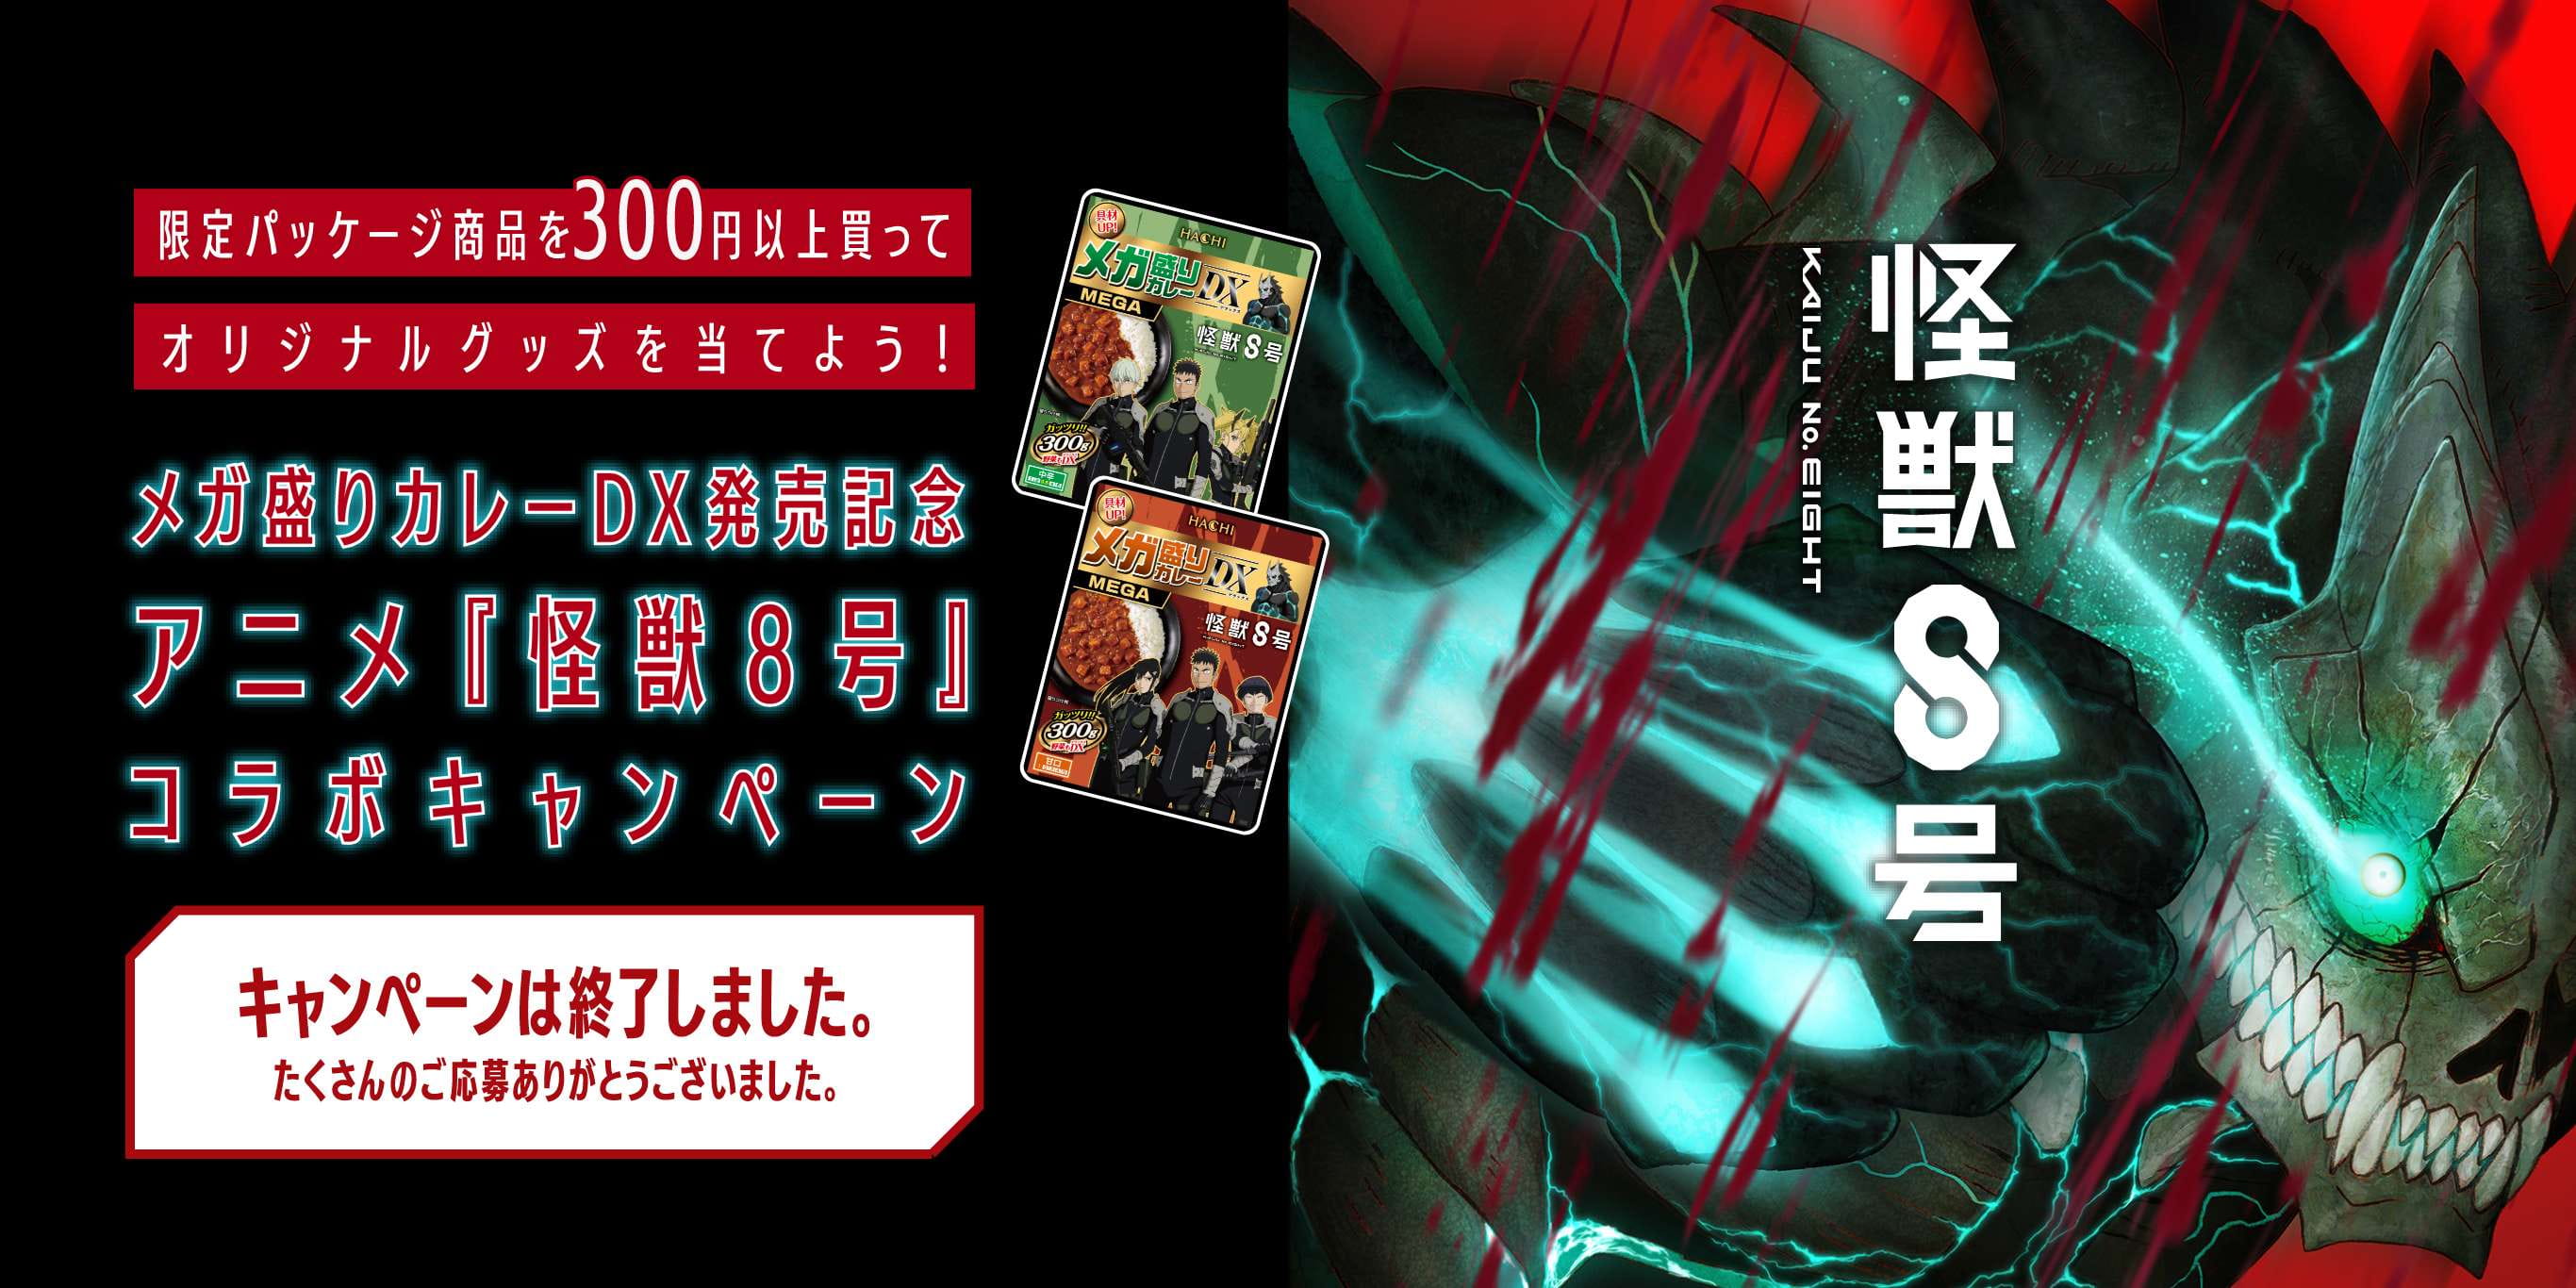 メガ盛りカレーDX発売記念 アニメ『怪獣８号』コラボキャンペーン